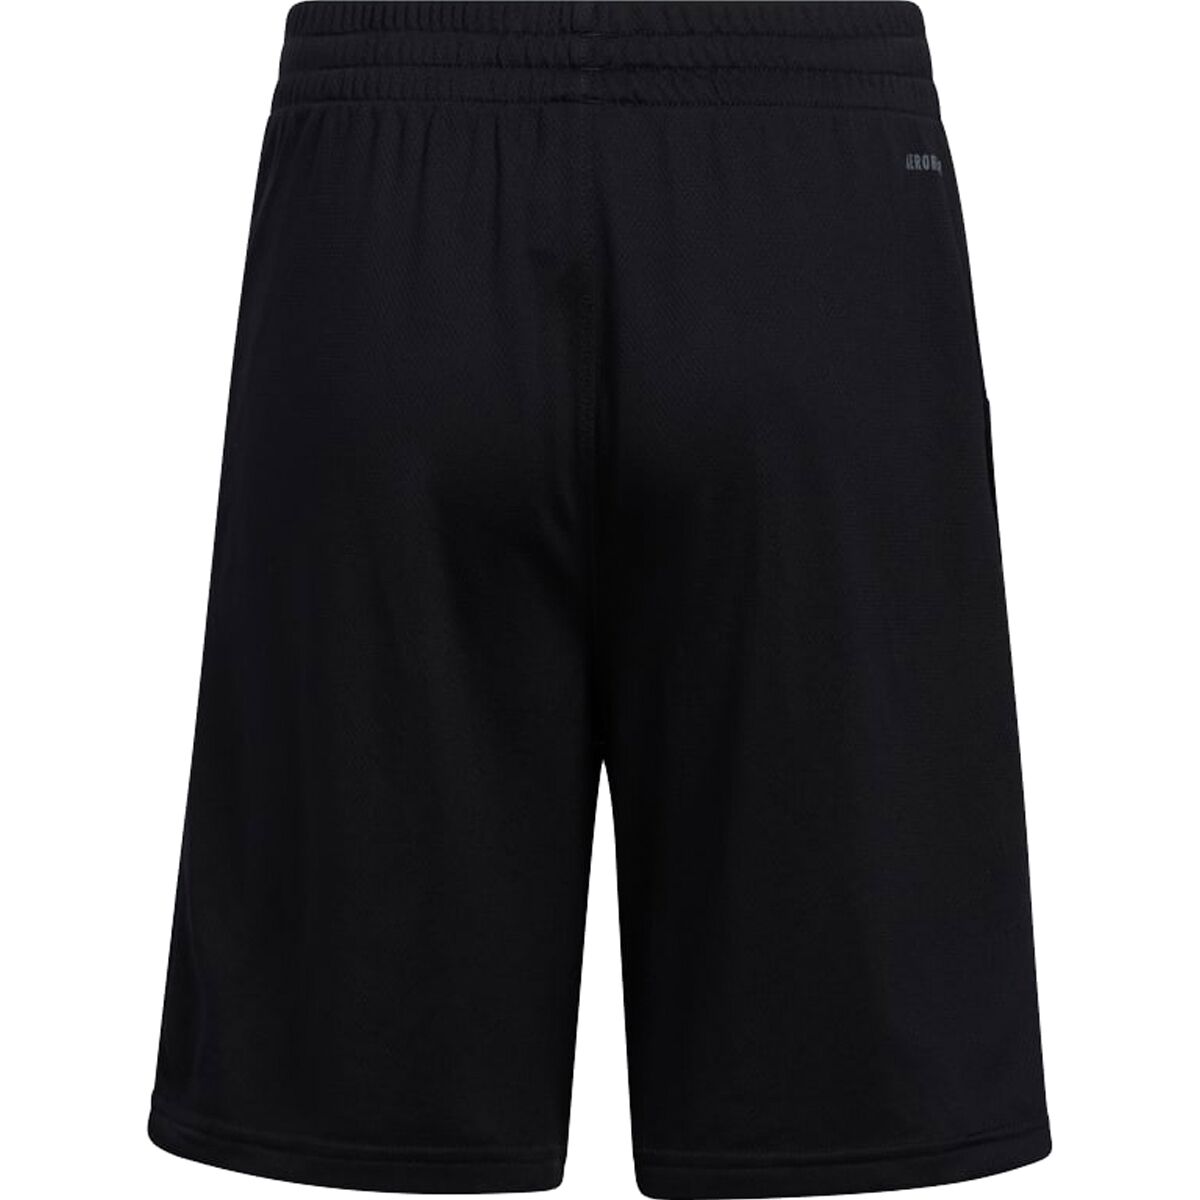 Adidas Pro Sport 3S Short - Boys' | Backcountry.com